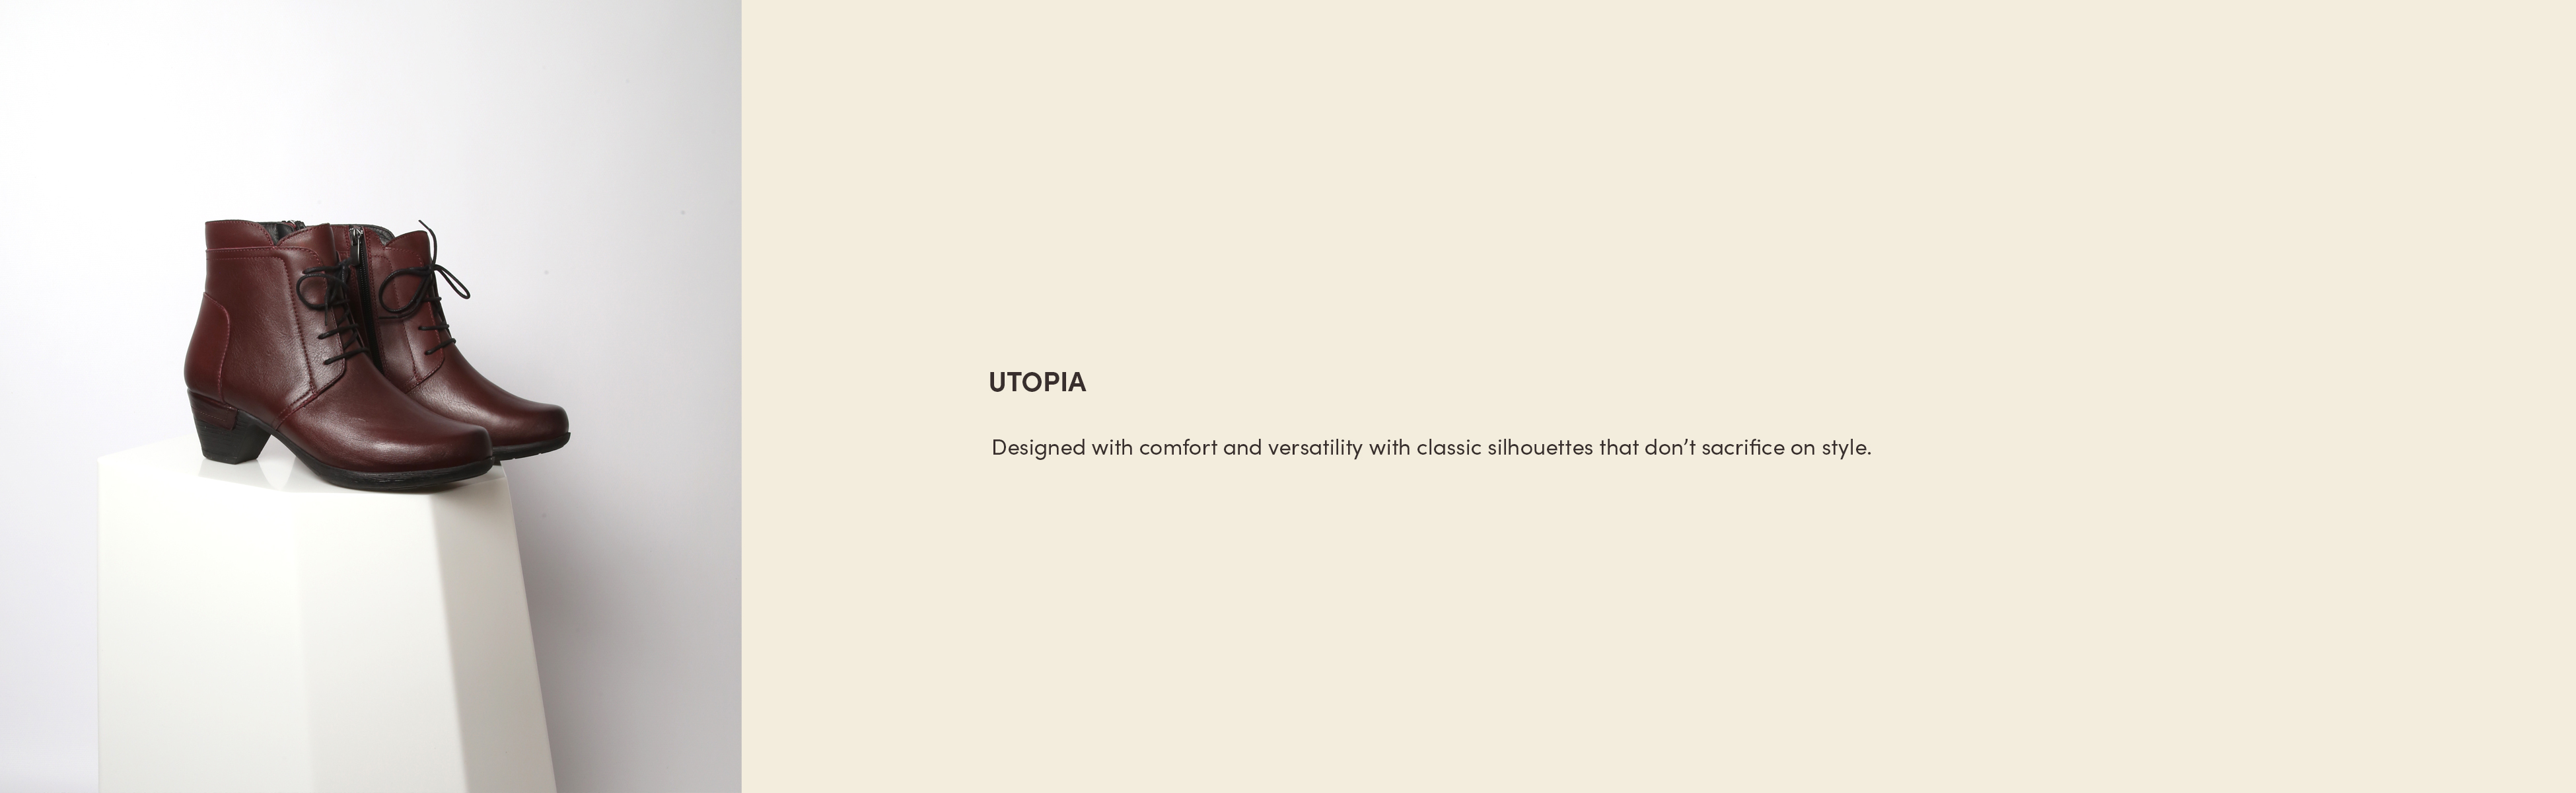 Utopia